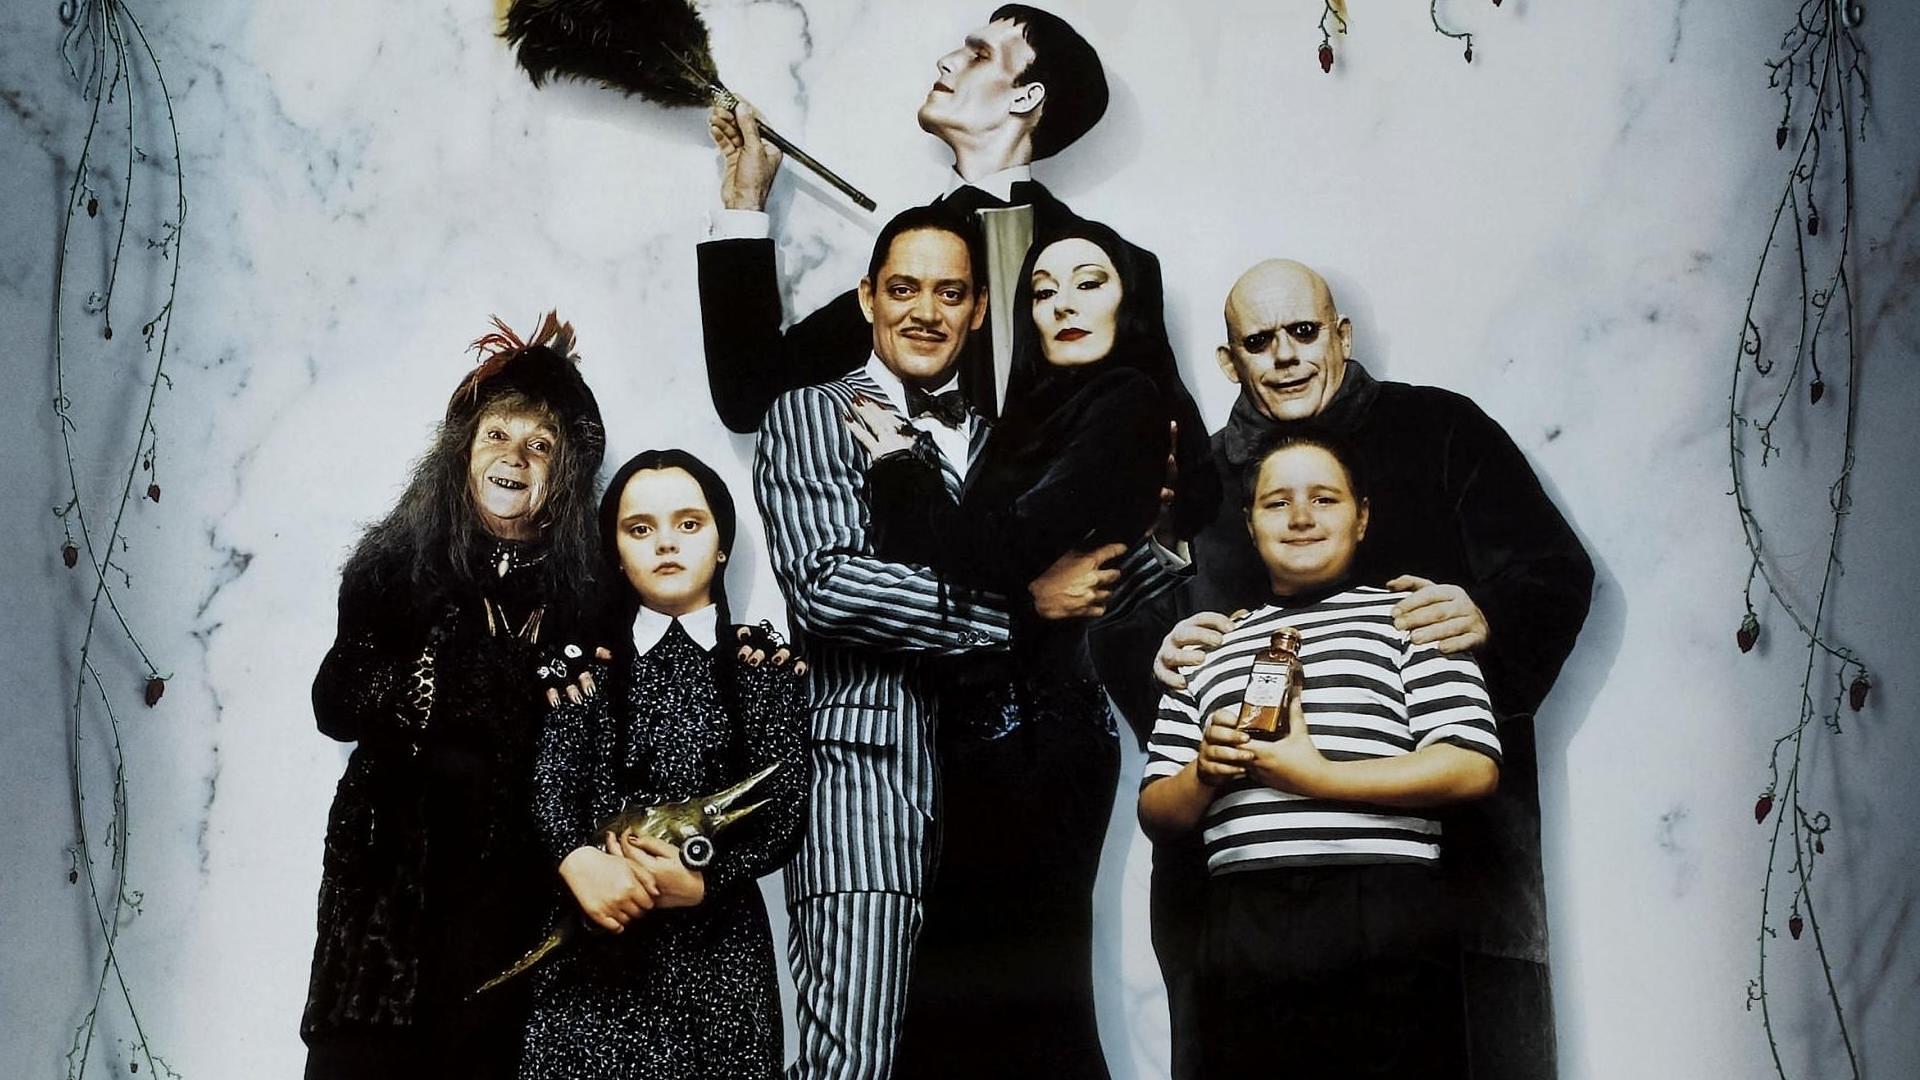 La famille Addams une famille pas comme les autres 